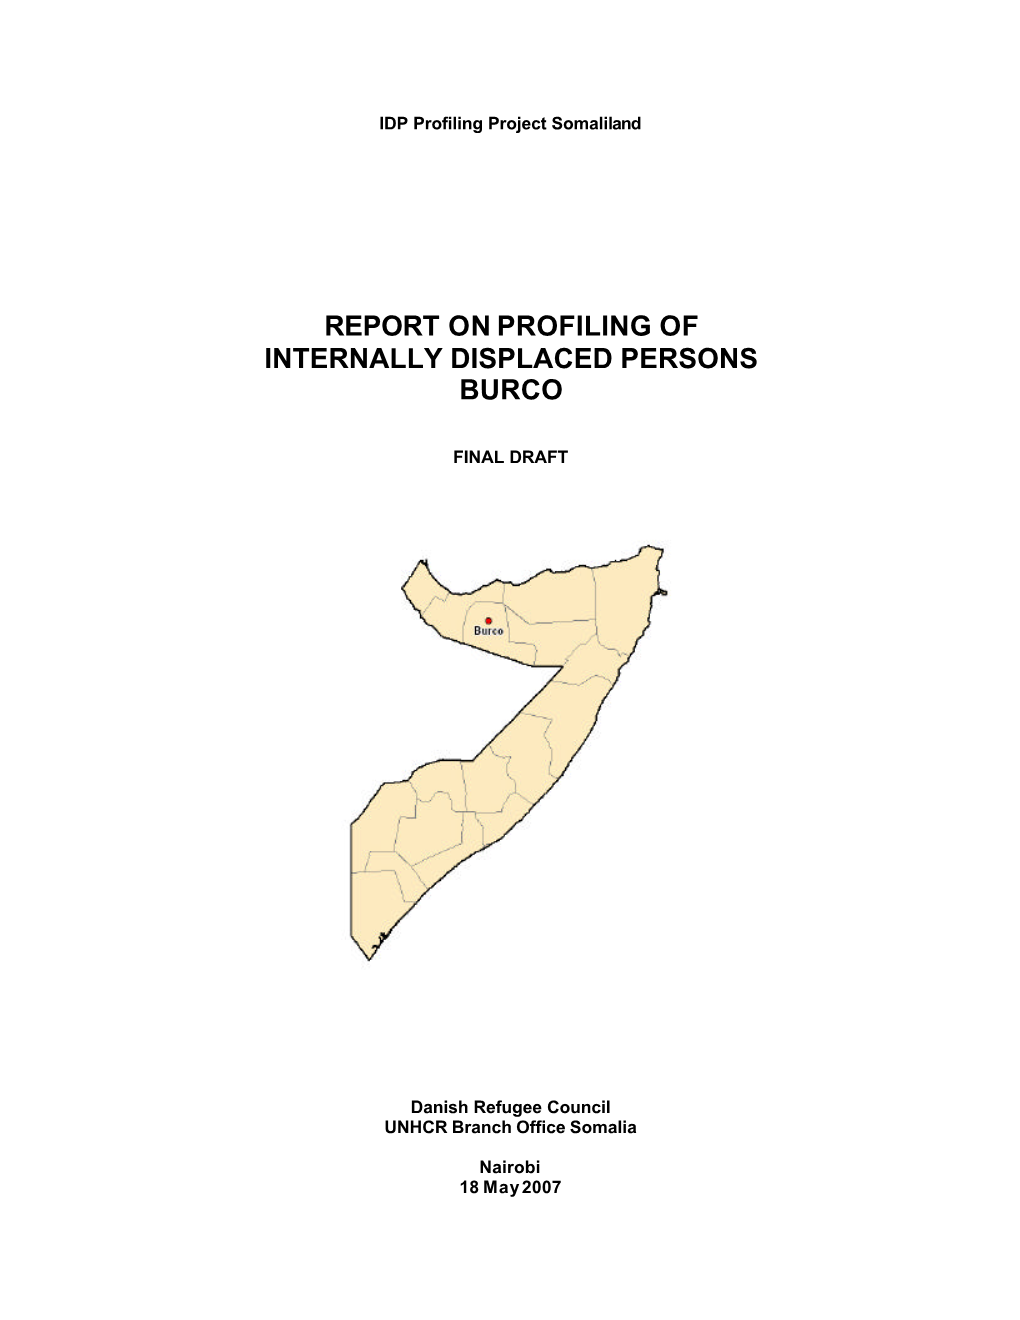 Burco IDP Profiling Report 2007-05-18